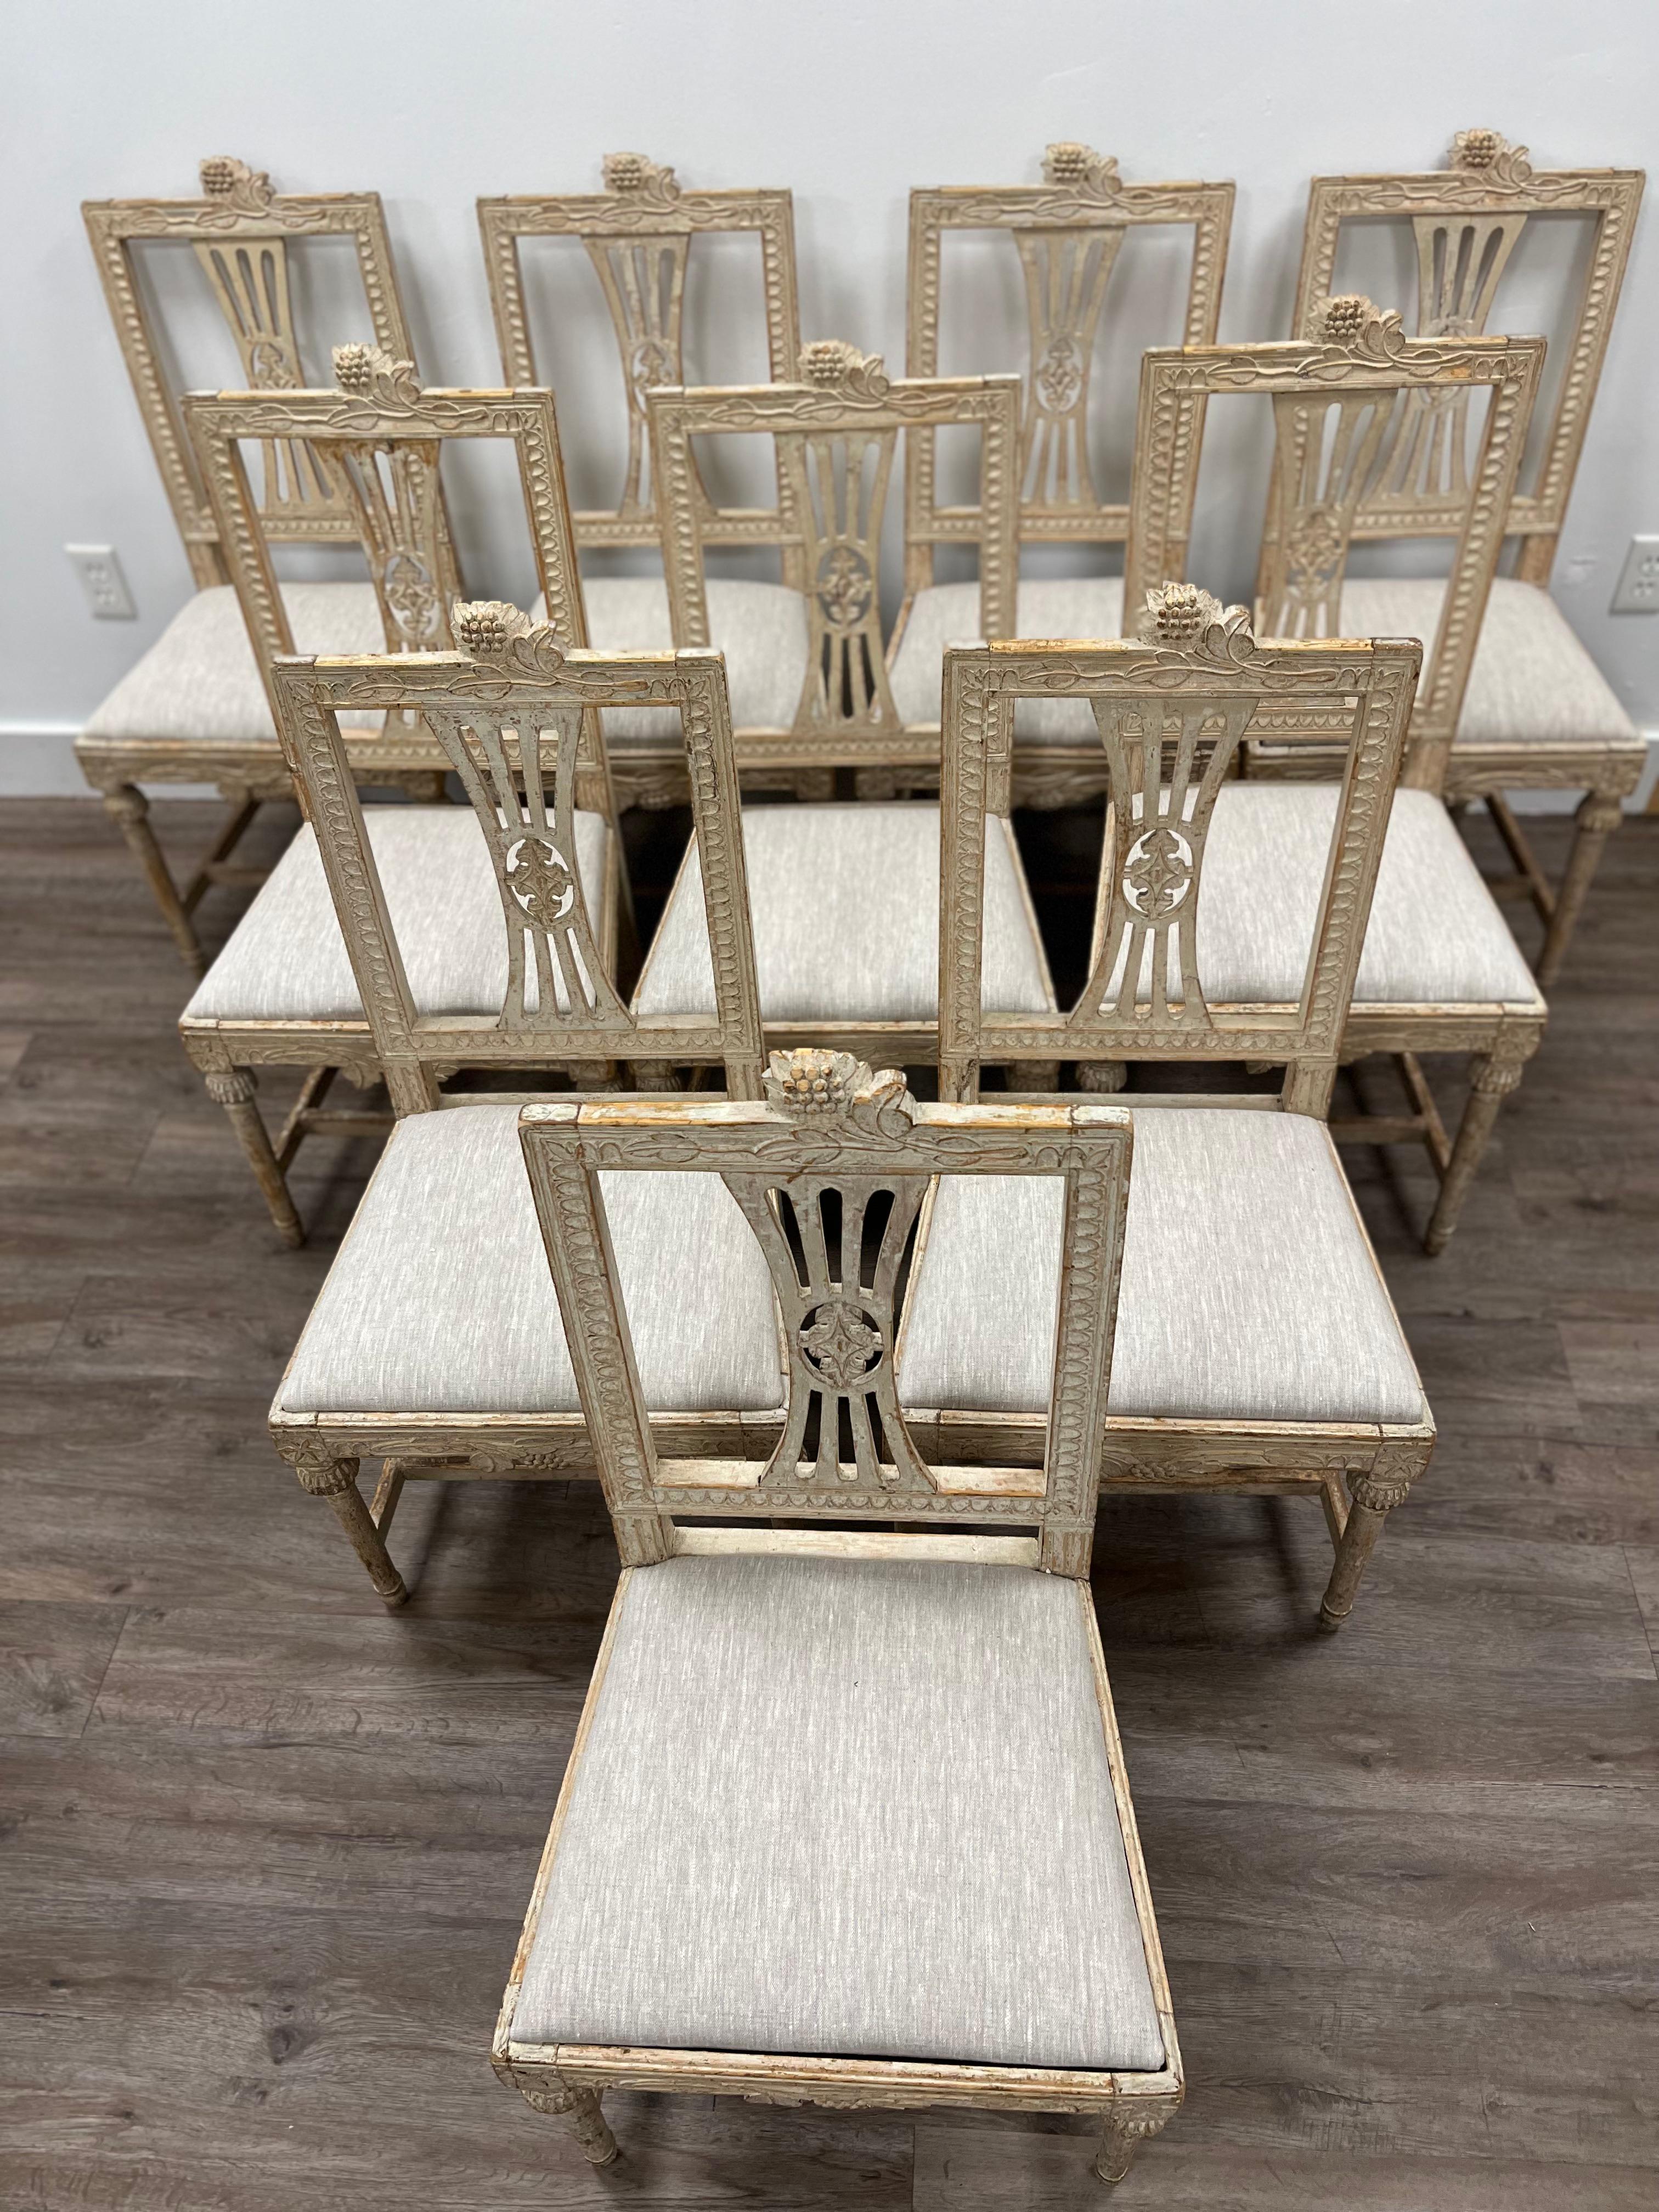 Un rare et superbe ensemble de dix chaises suédoises de style gustavien tardif, fabriquées à Lindome. Dos rectangulaire avec des détails en forme de feuilles sur trois côtés. La partie supérieure est ornée d'un motif floral menant à une couronne de